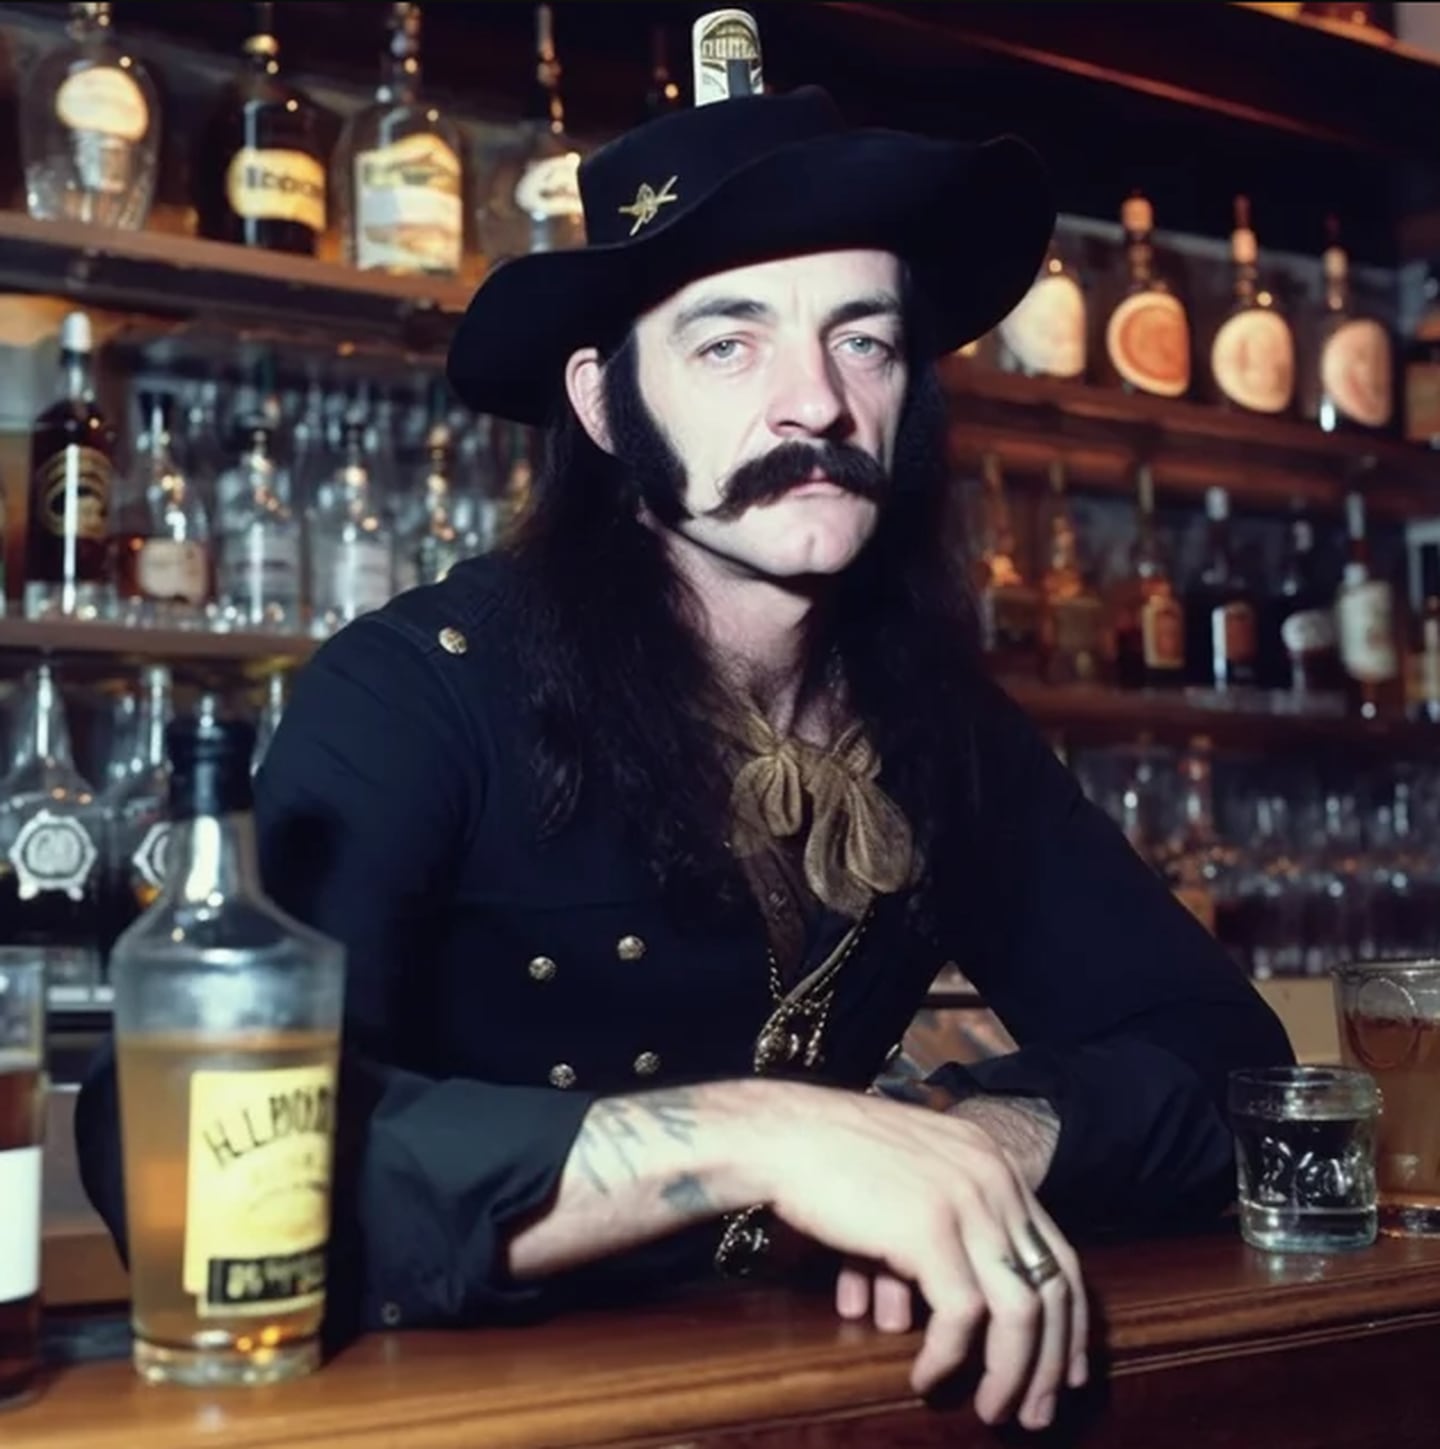 Lemmy Kilmister (líder y fundador de Mötorhead), como bartender